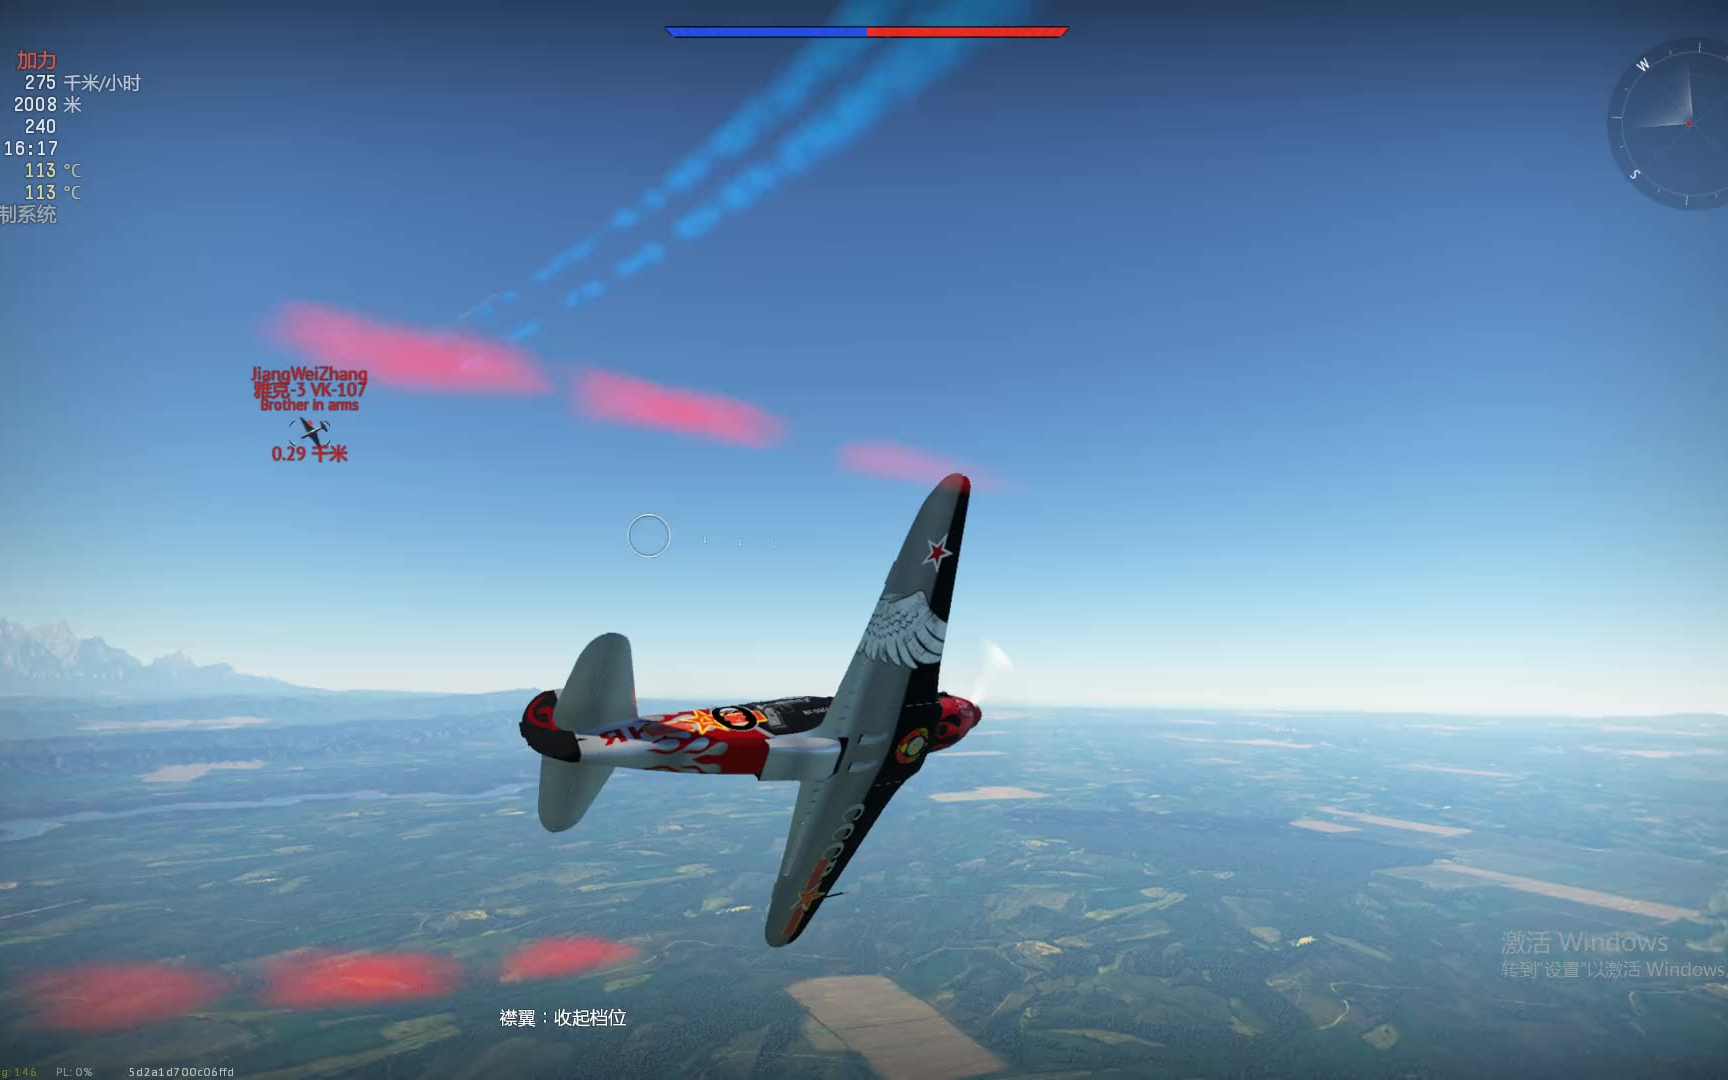 雅克3vk107一对一空战格斗失败篇